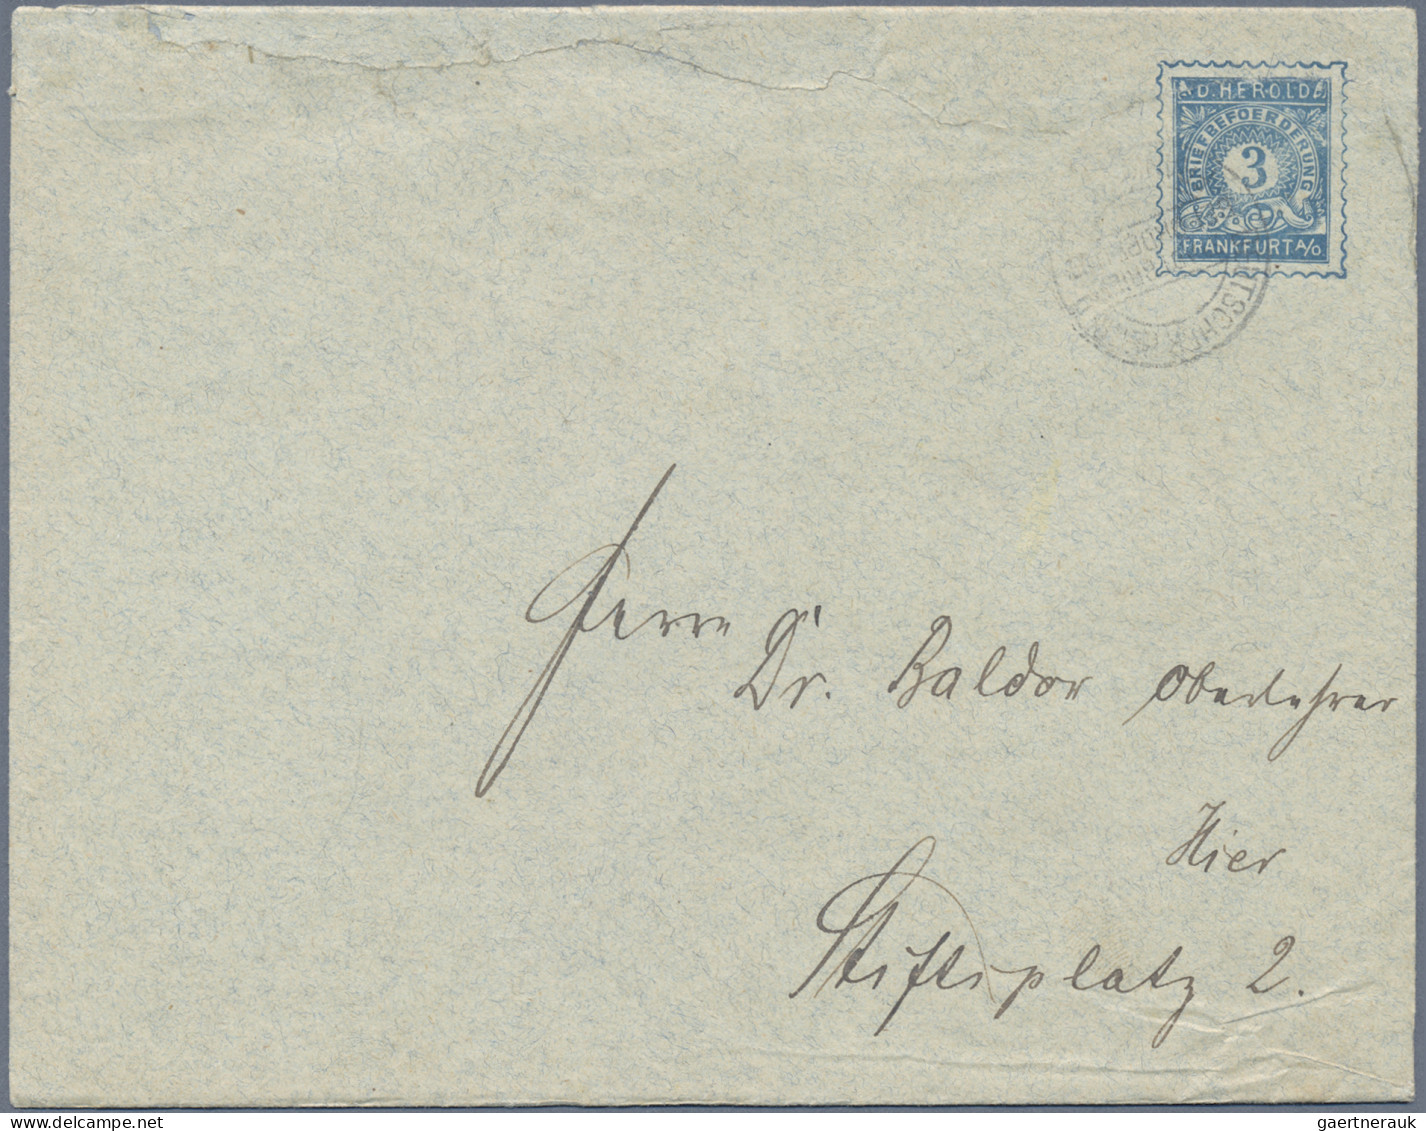 Deutsches Reich - Privatpost (Stadtpost): 1897 "Frankfurt/Oder - Privatpost": Ga - Private & Local Mails